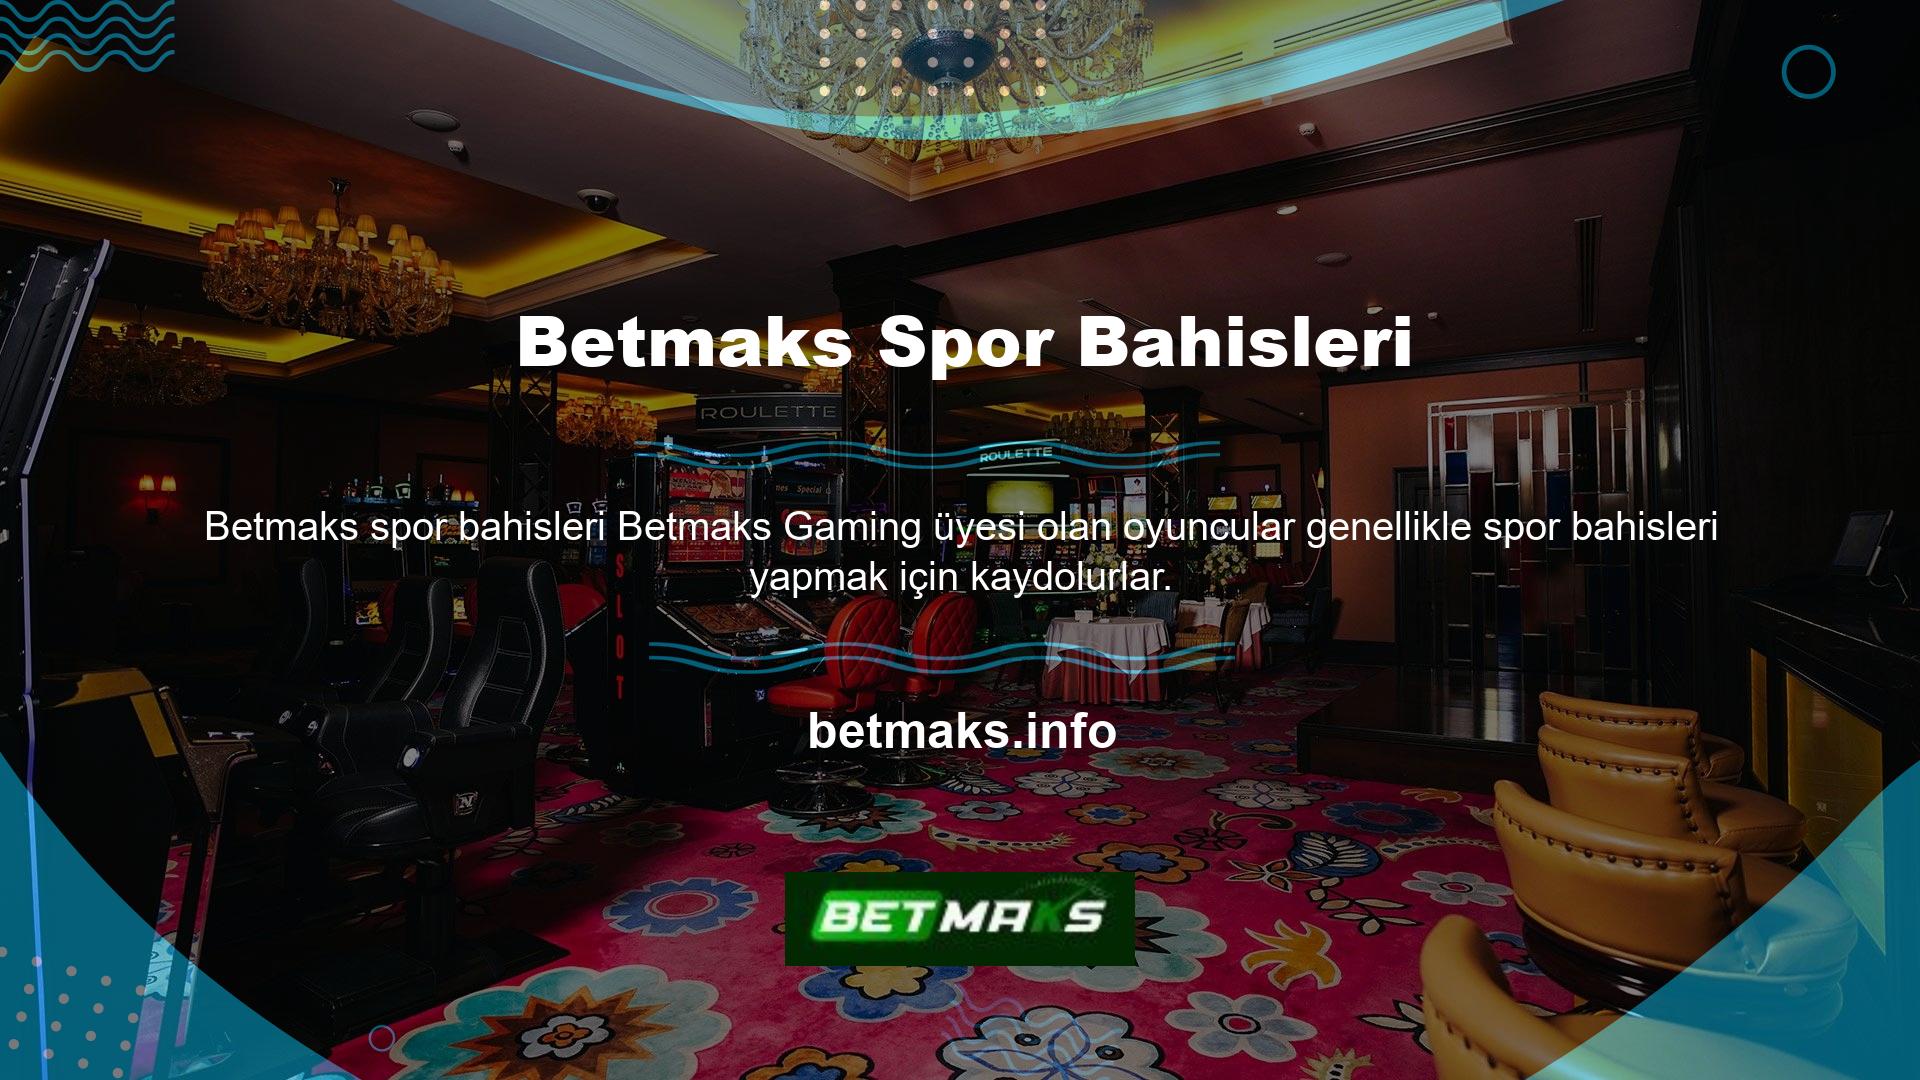 Çünkü Betmaks Gaming ülkemizde yüksek oranlı tek bahis firmasıdır